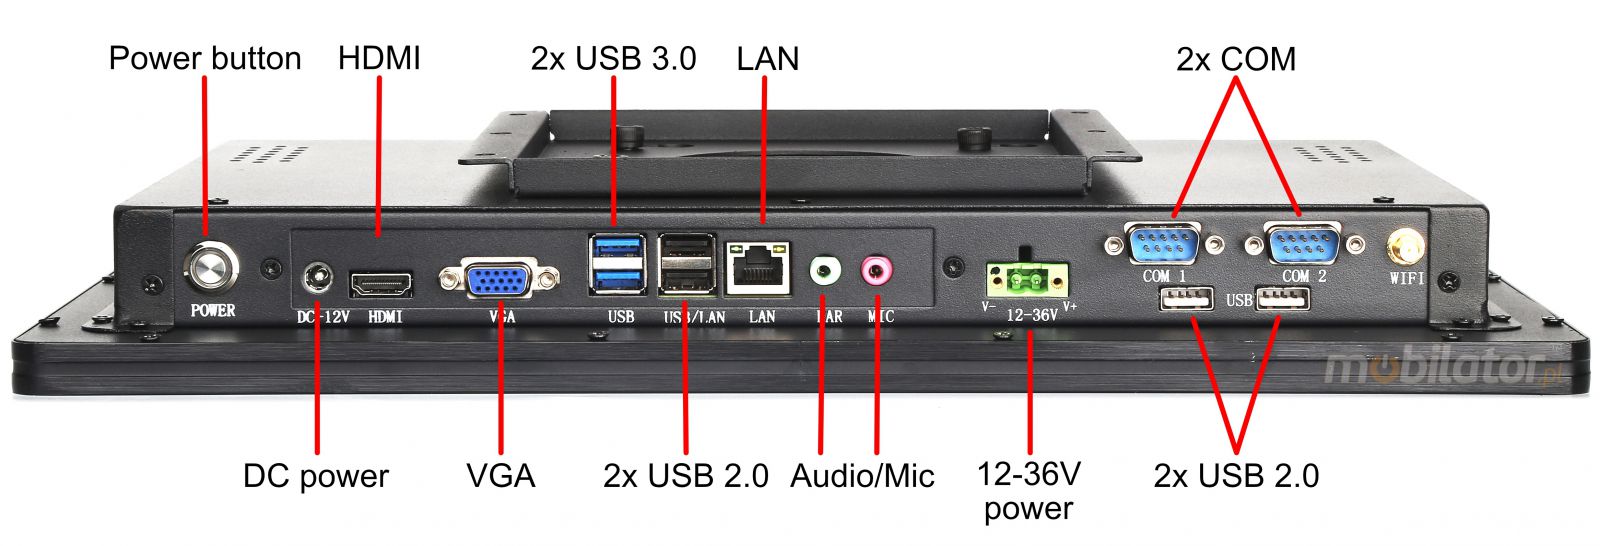 BIBOX-215PC2 zcza: 2x USB 3.0 | 2x USB 2.0 |2x COM | 2x LAN 1x VGA | 1x HDMI |DC 12V